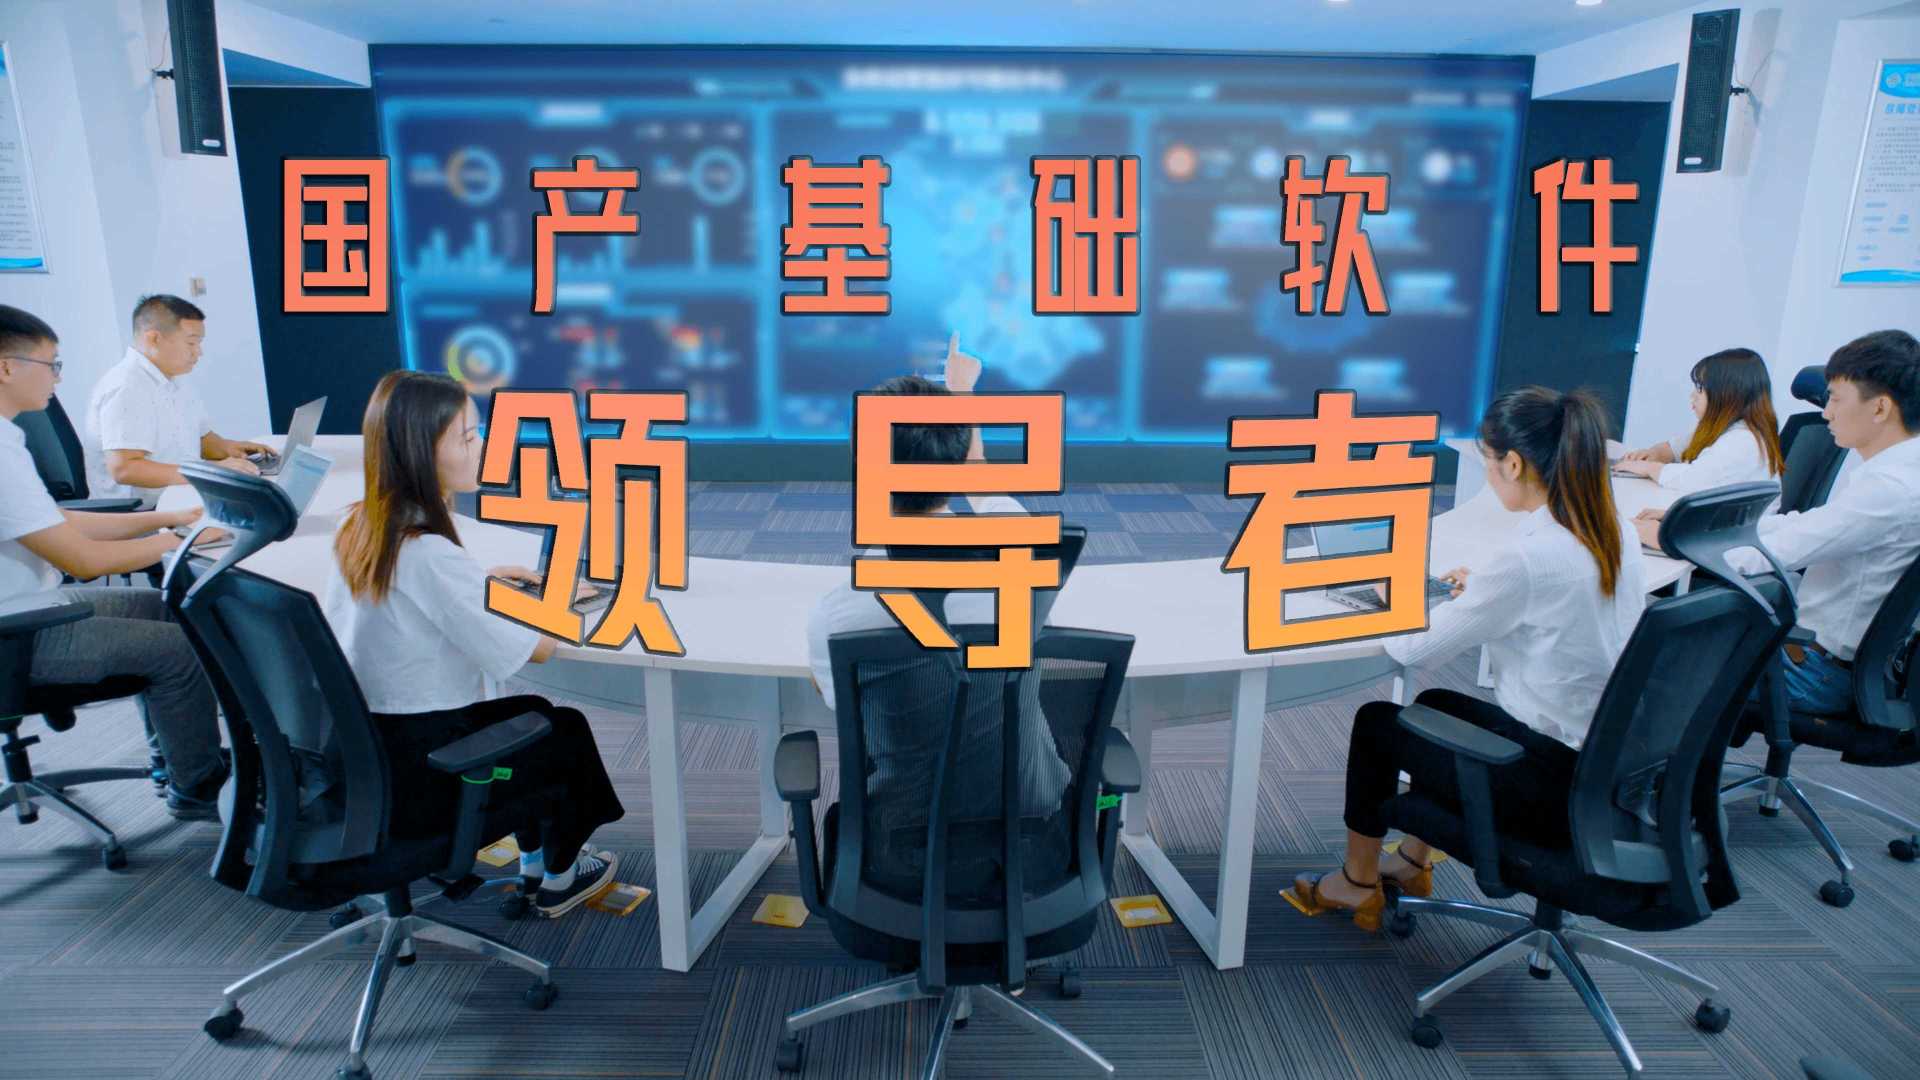 宝兰德×光年映画丨基础软件丨通信丨IT企业IPO宣传片